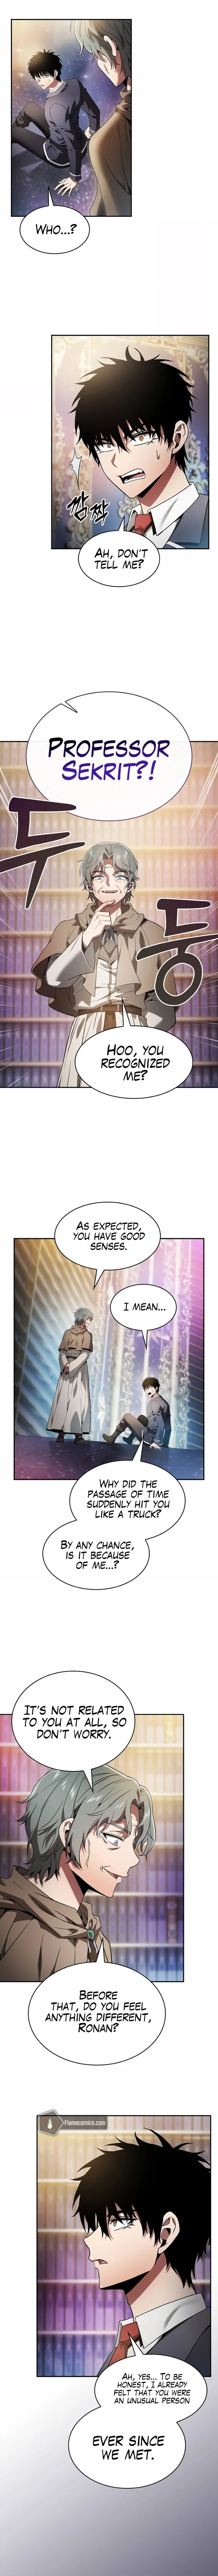 Academy’s Genius Swordsman - Chapter 34 Page 1